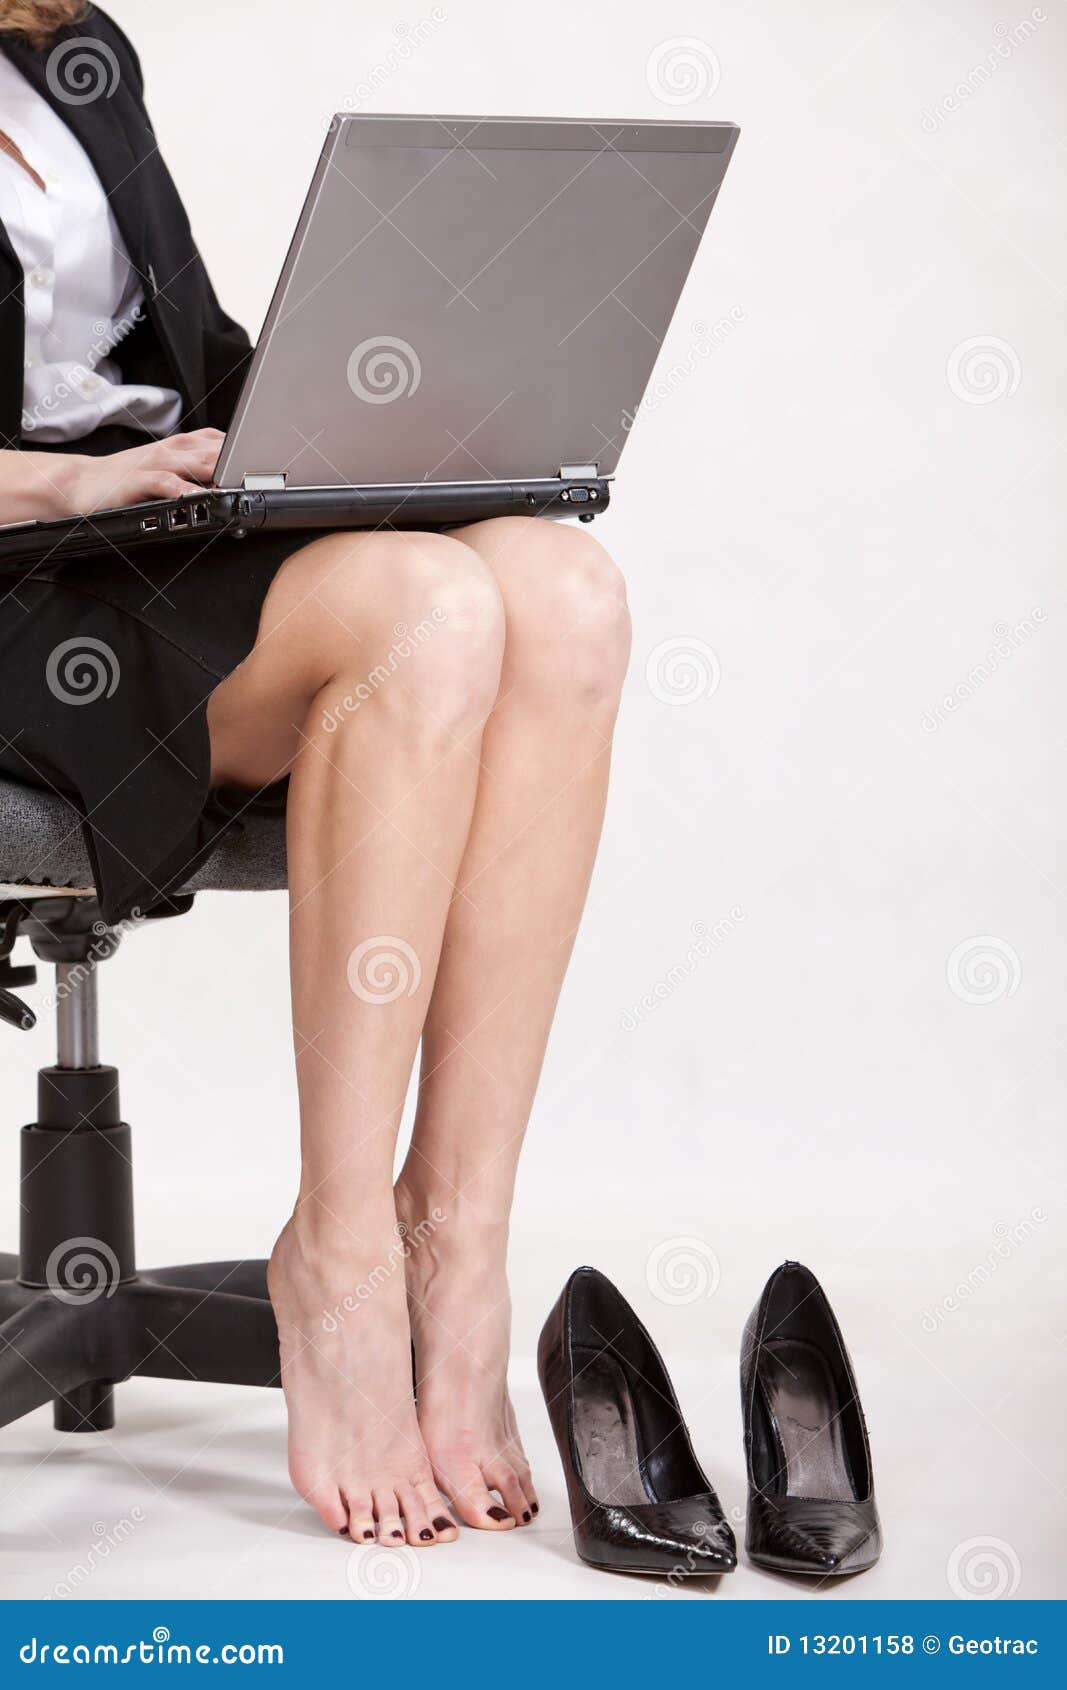 Leg work. Деловая женщина ноги. Красивые ножки на работе. Бизнес леди ноги. Женские ножки на работе.